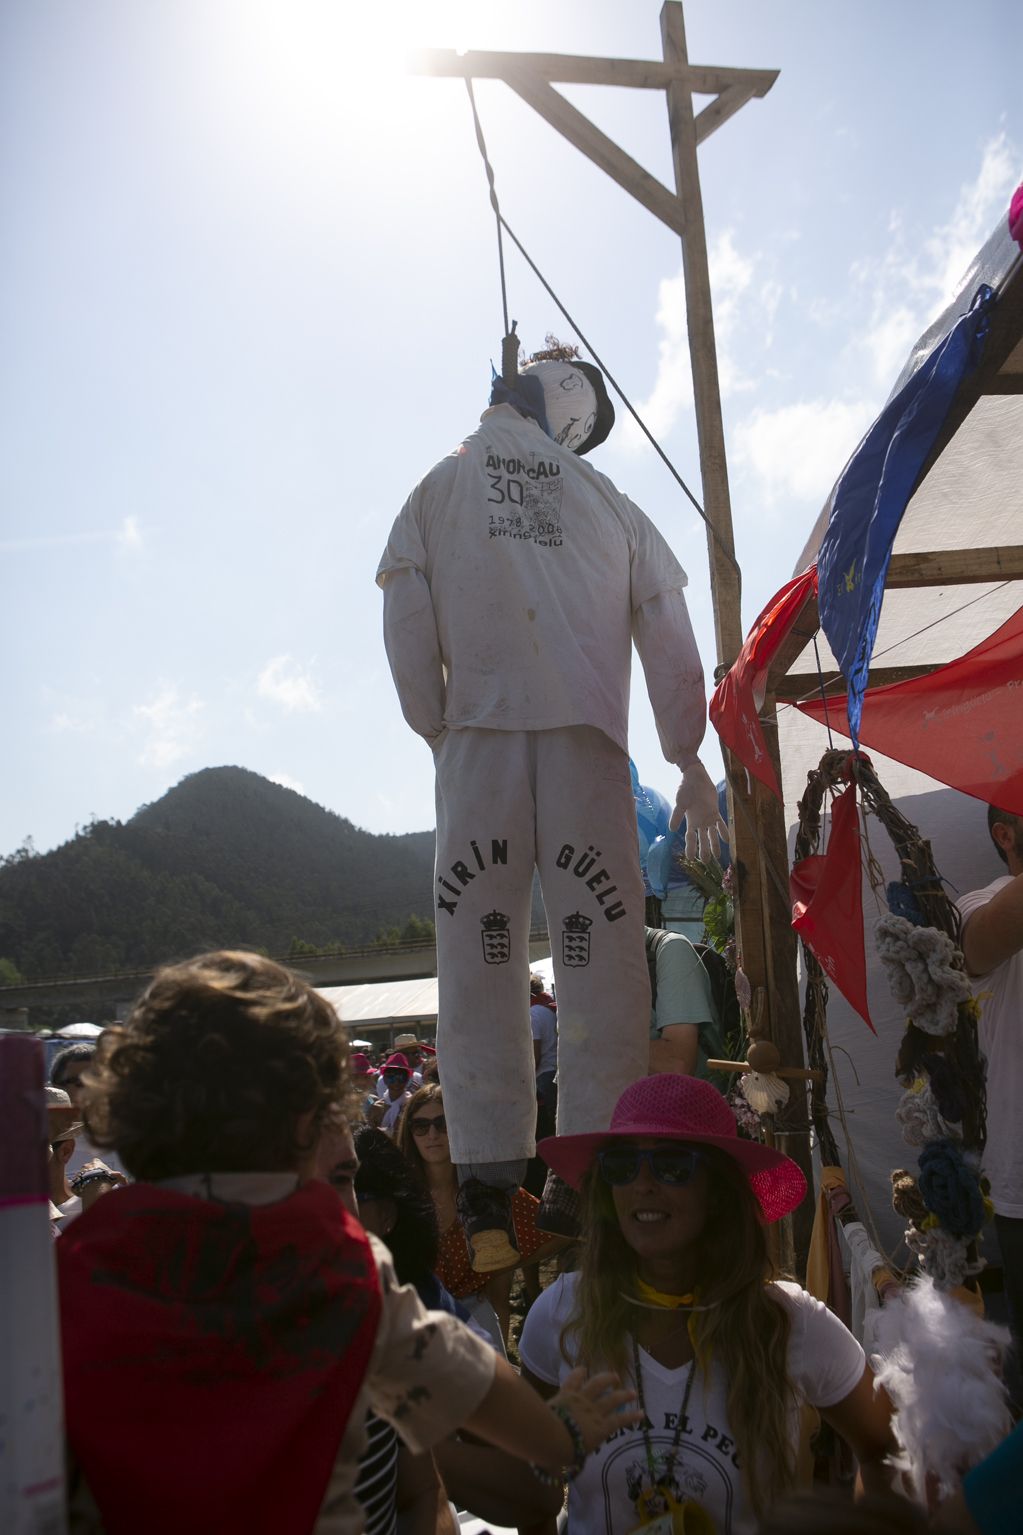 En imágenes: espalma la fiesta en el regreso del Xiringüelu